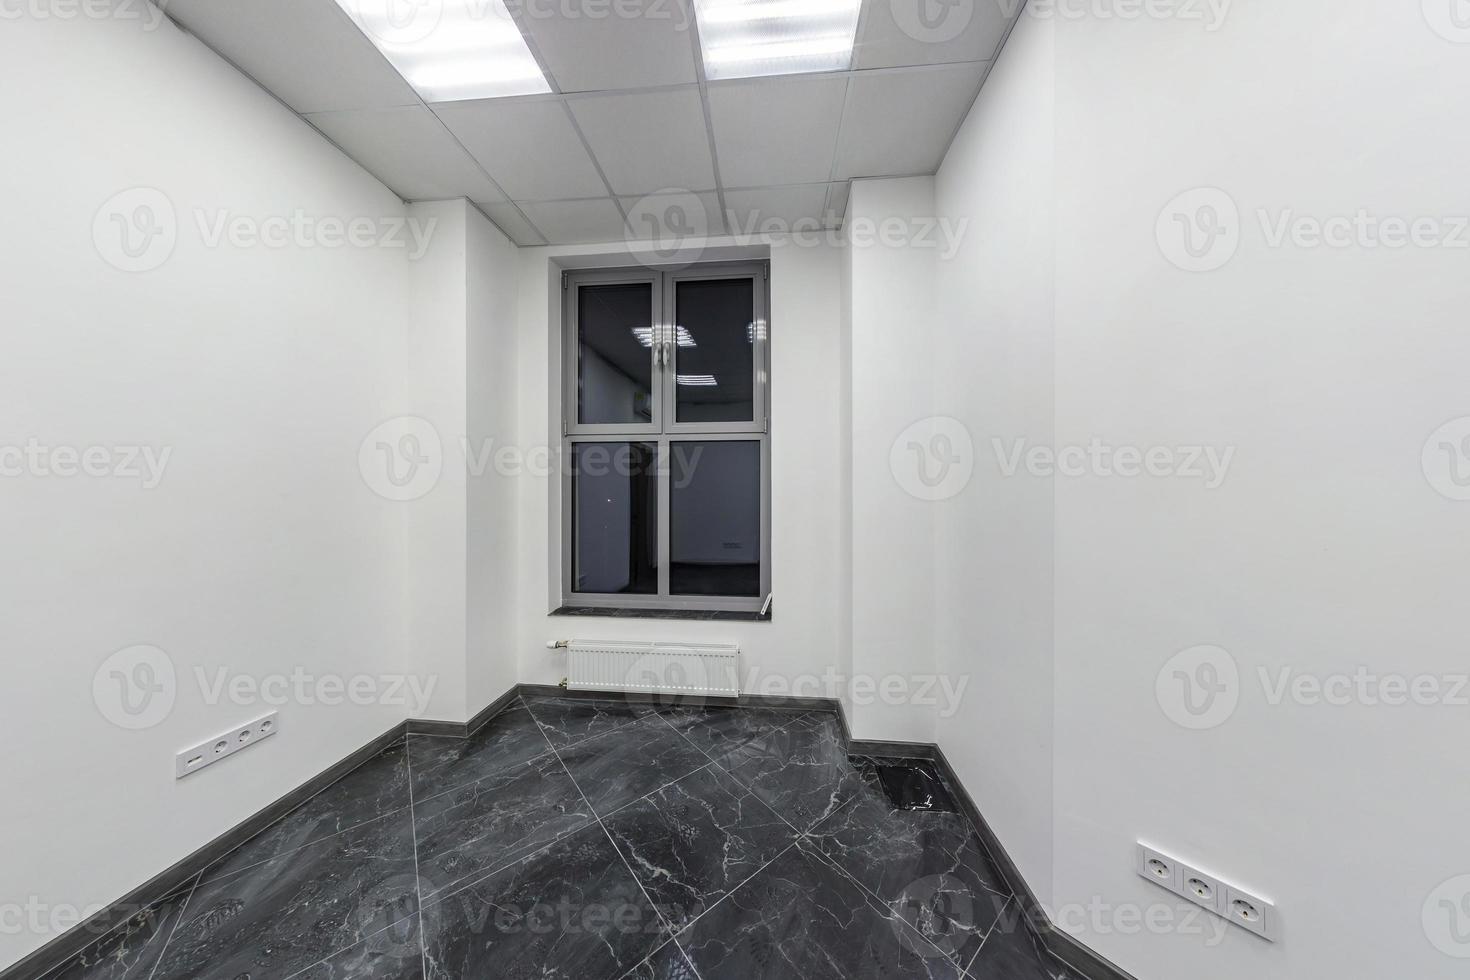 stora fönster i tomma omöblerade rumsinredning i vit stilfärg i moderna lägenheter, kontor eller klinik foto